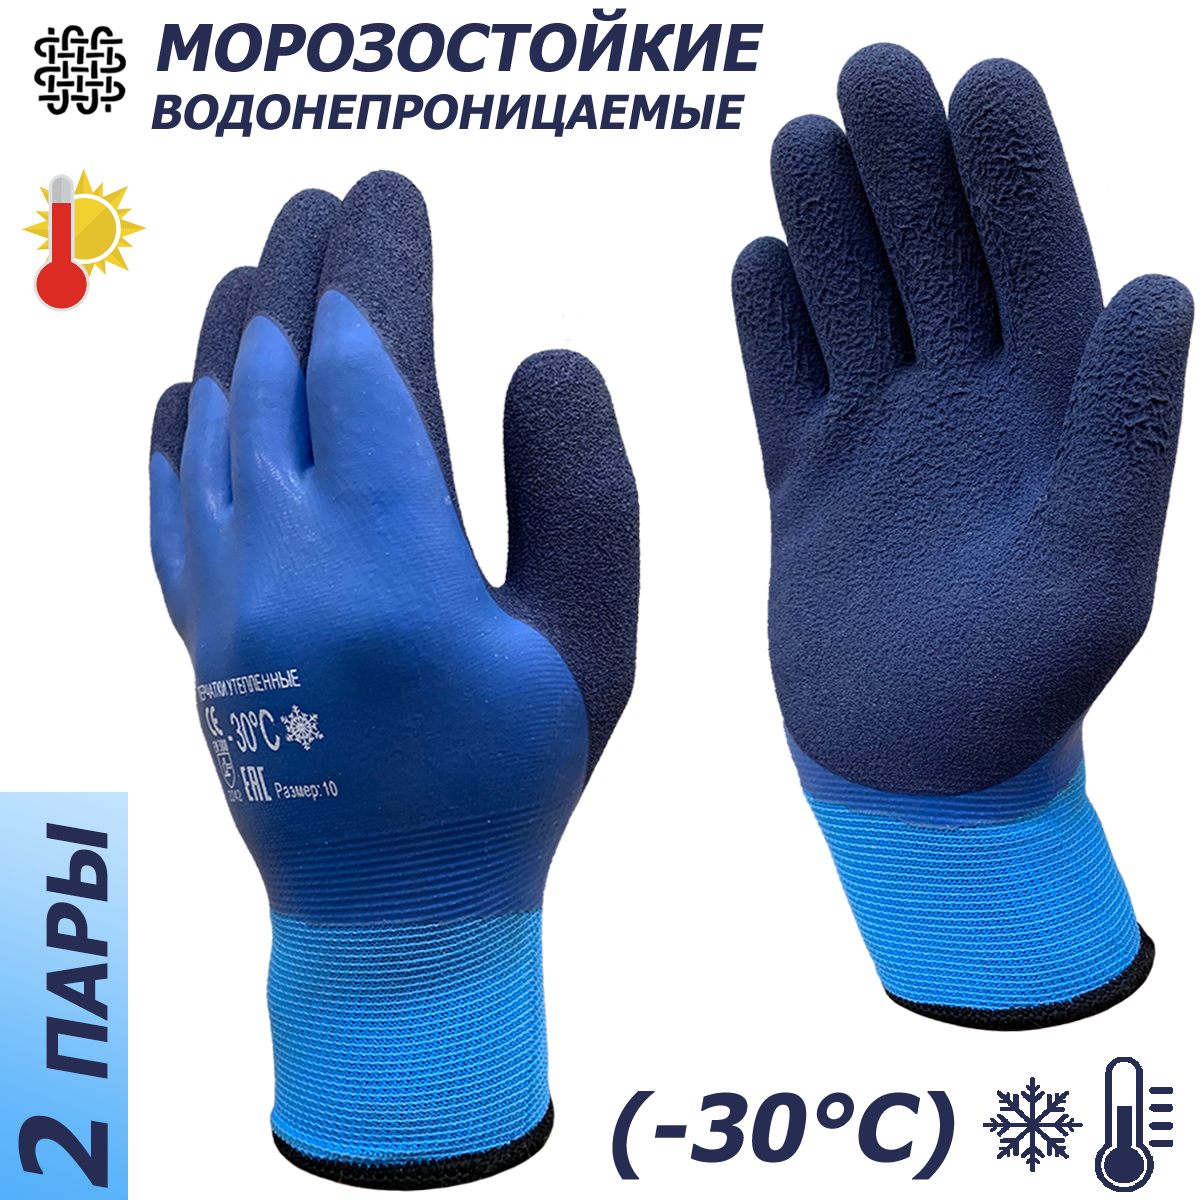 2 пары. Утепленные водонепроницаемые перчатки Master-Pro ханты (надым), махровые акриловые с полным морозостойким покрытием ПВХ+нитрил, 10 размер,